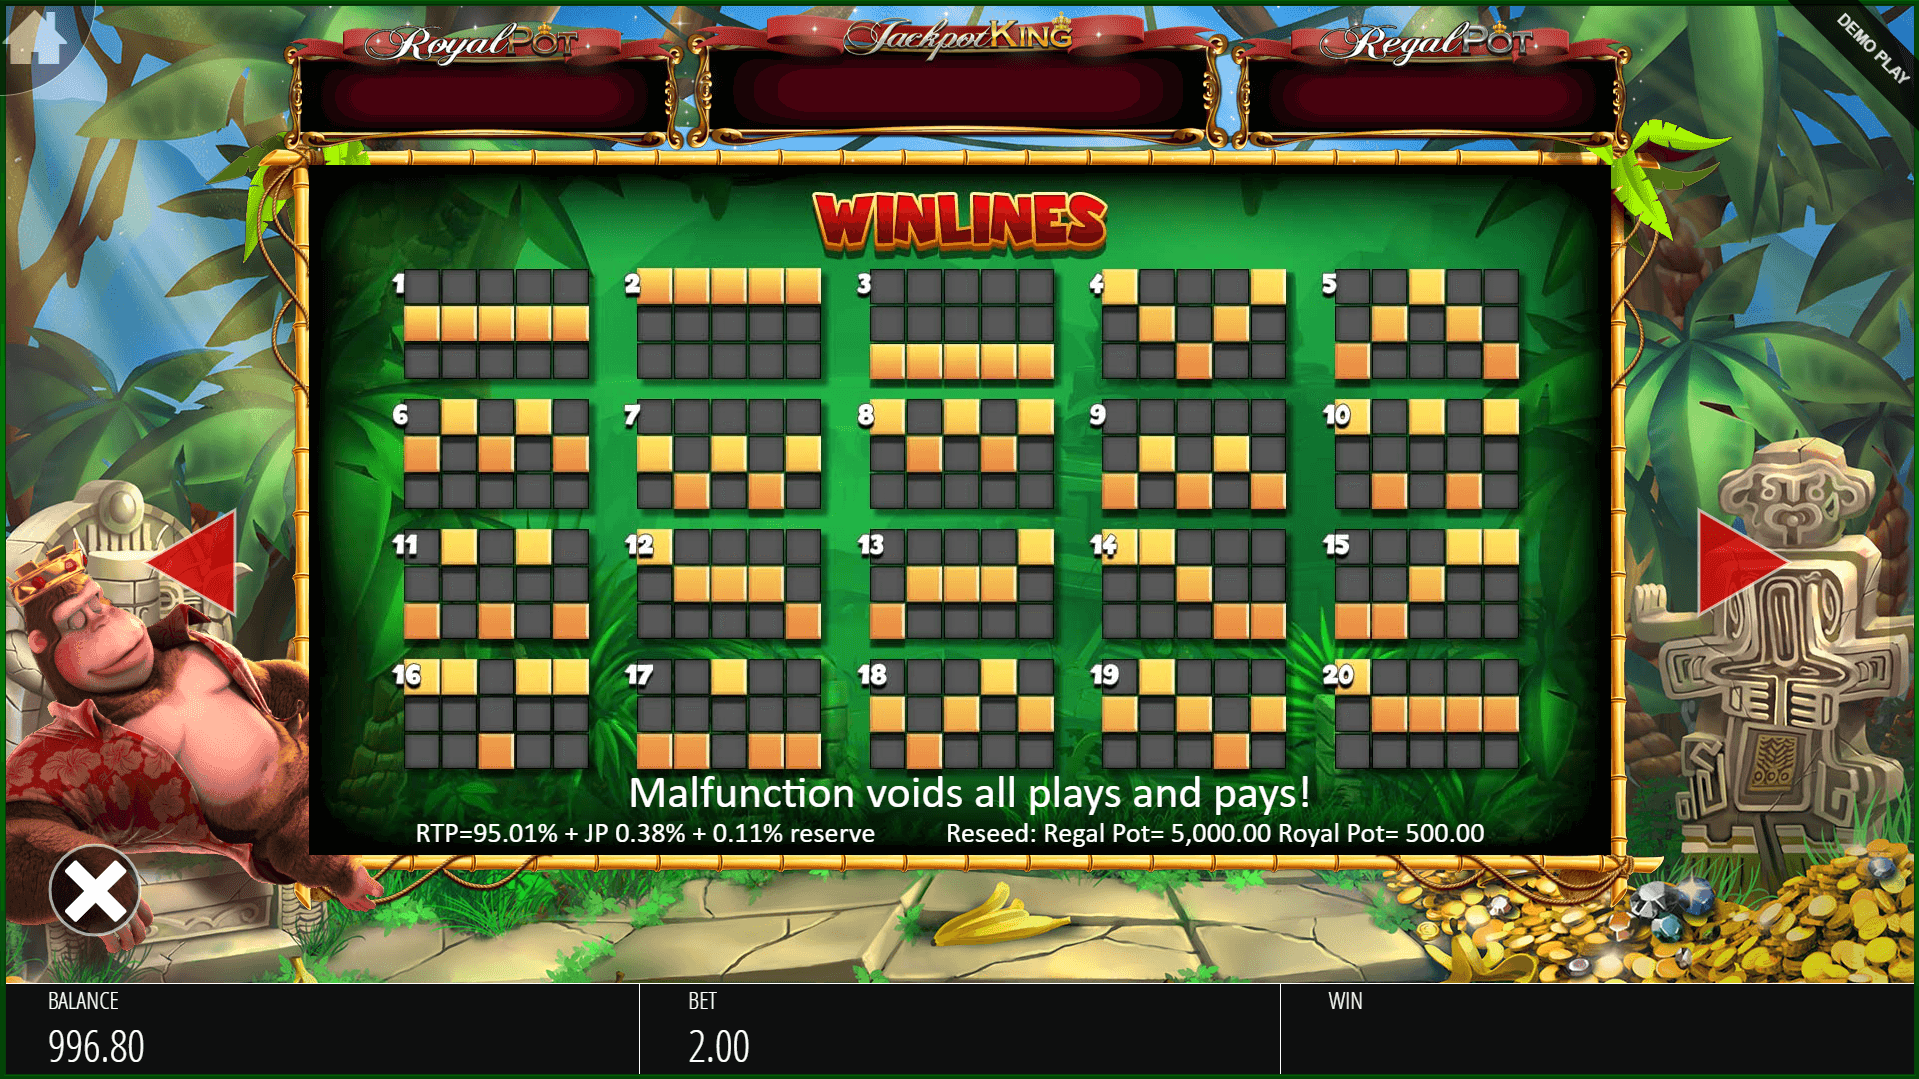 king kong cash jackpot king slot machine detail image 2